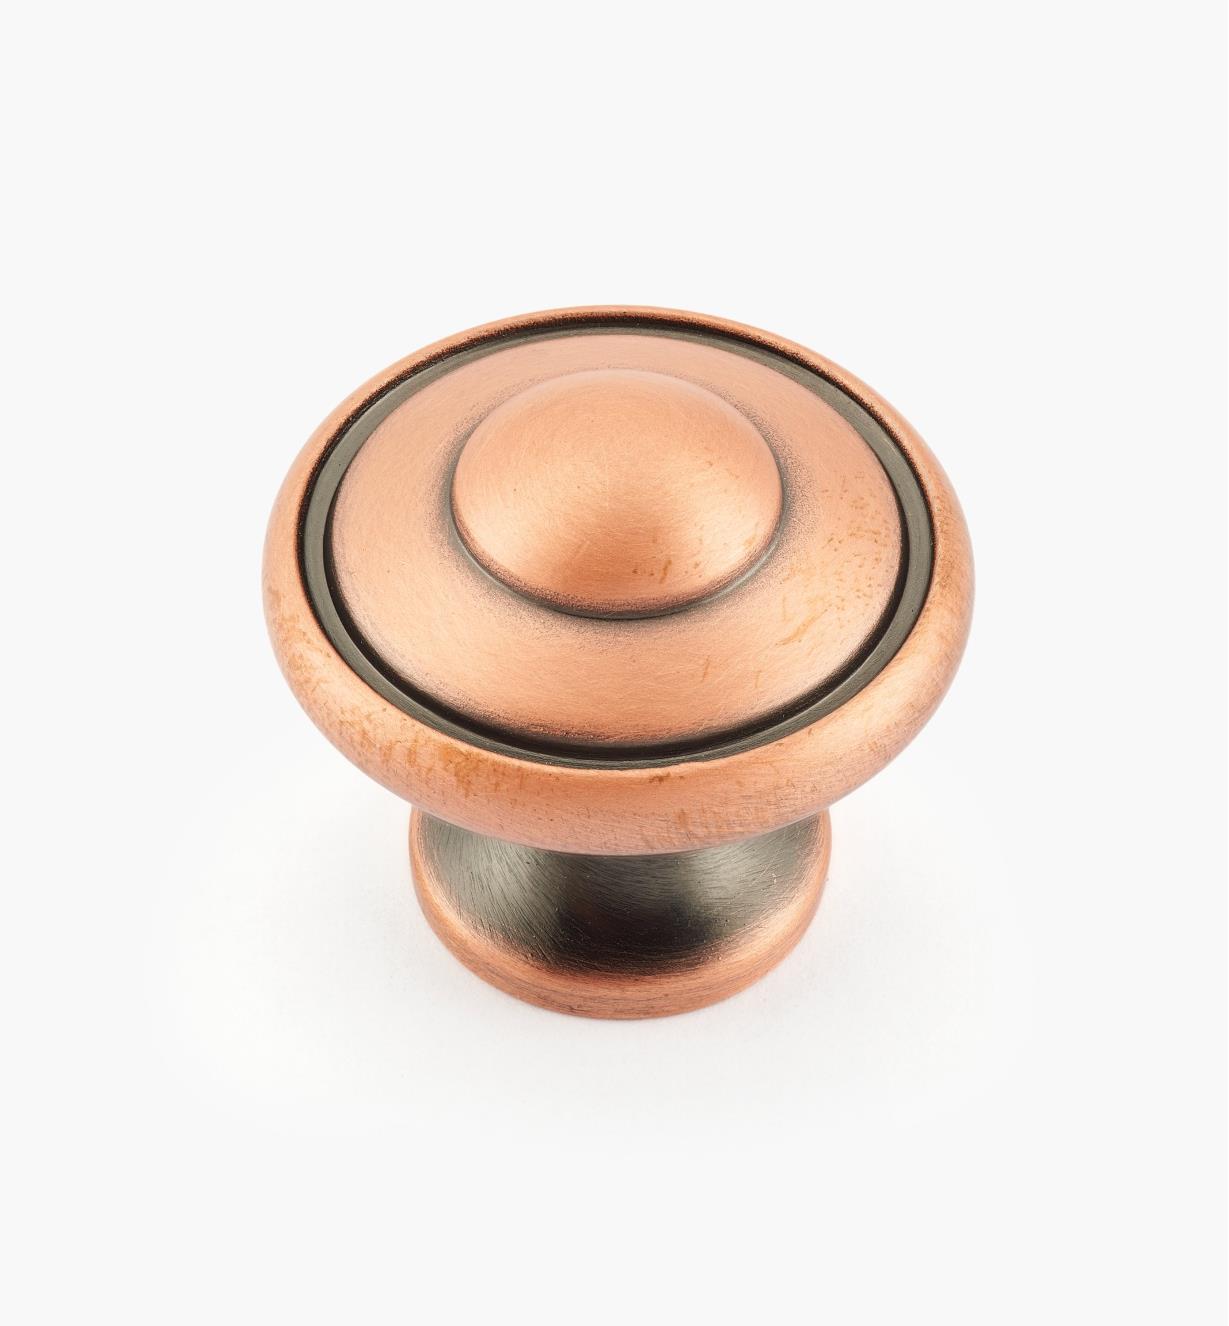 02G1811 - Brushed Antique Copper Knob